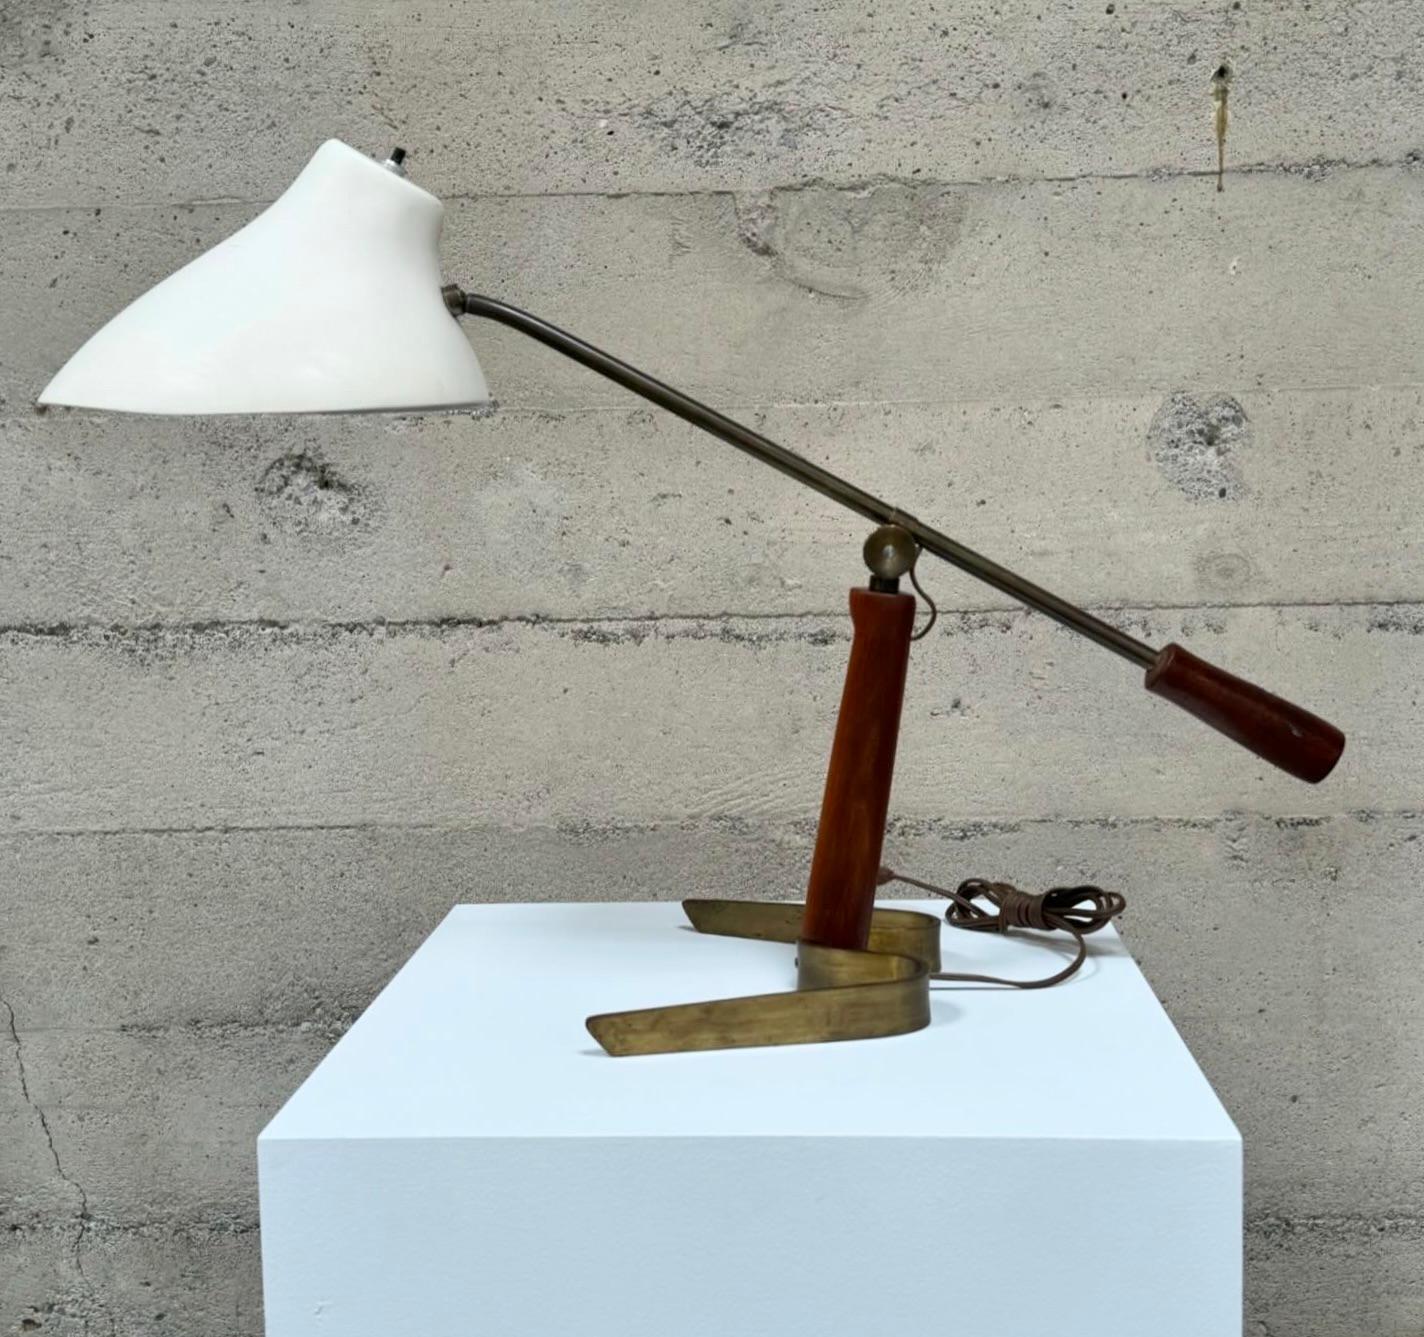 Verstellbare holländische Tischleuchte mit einem Sockel aus Messingband mit einem skulpturalen Glasfaserschirm und einem hölzernen Gegengewicht mit einem hölzernen Stiel mit einem Messingknopf zum Festziehen des verstellbaren Arms. Der Hauptstamm